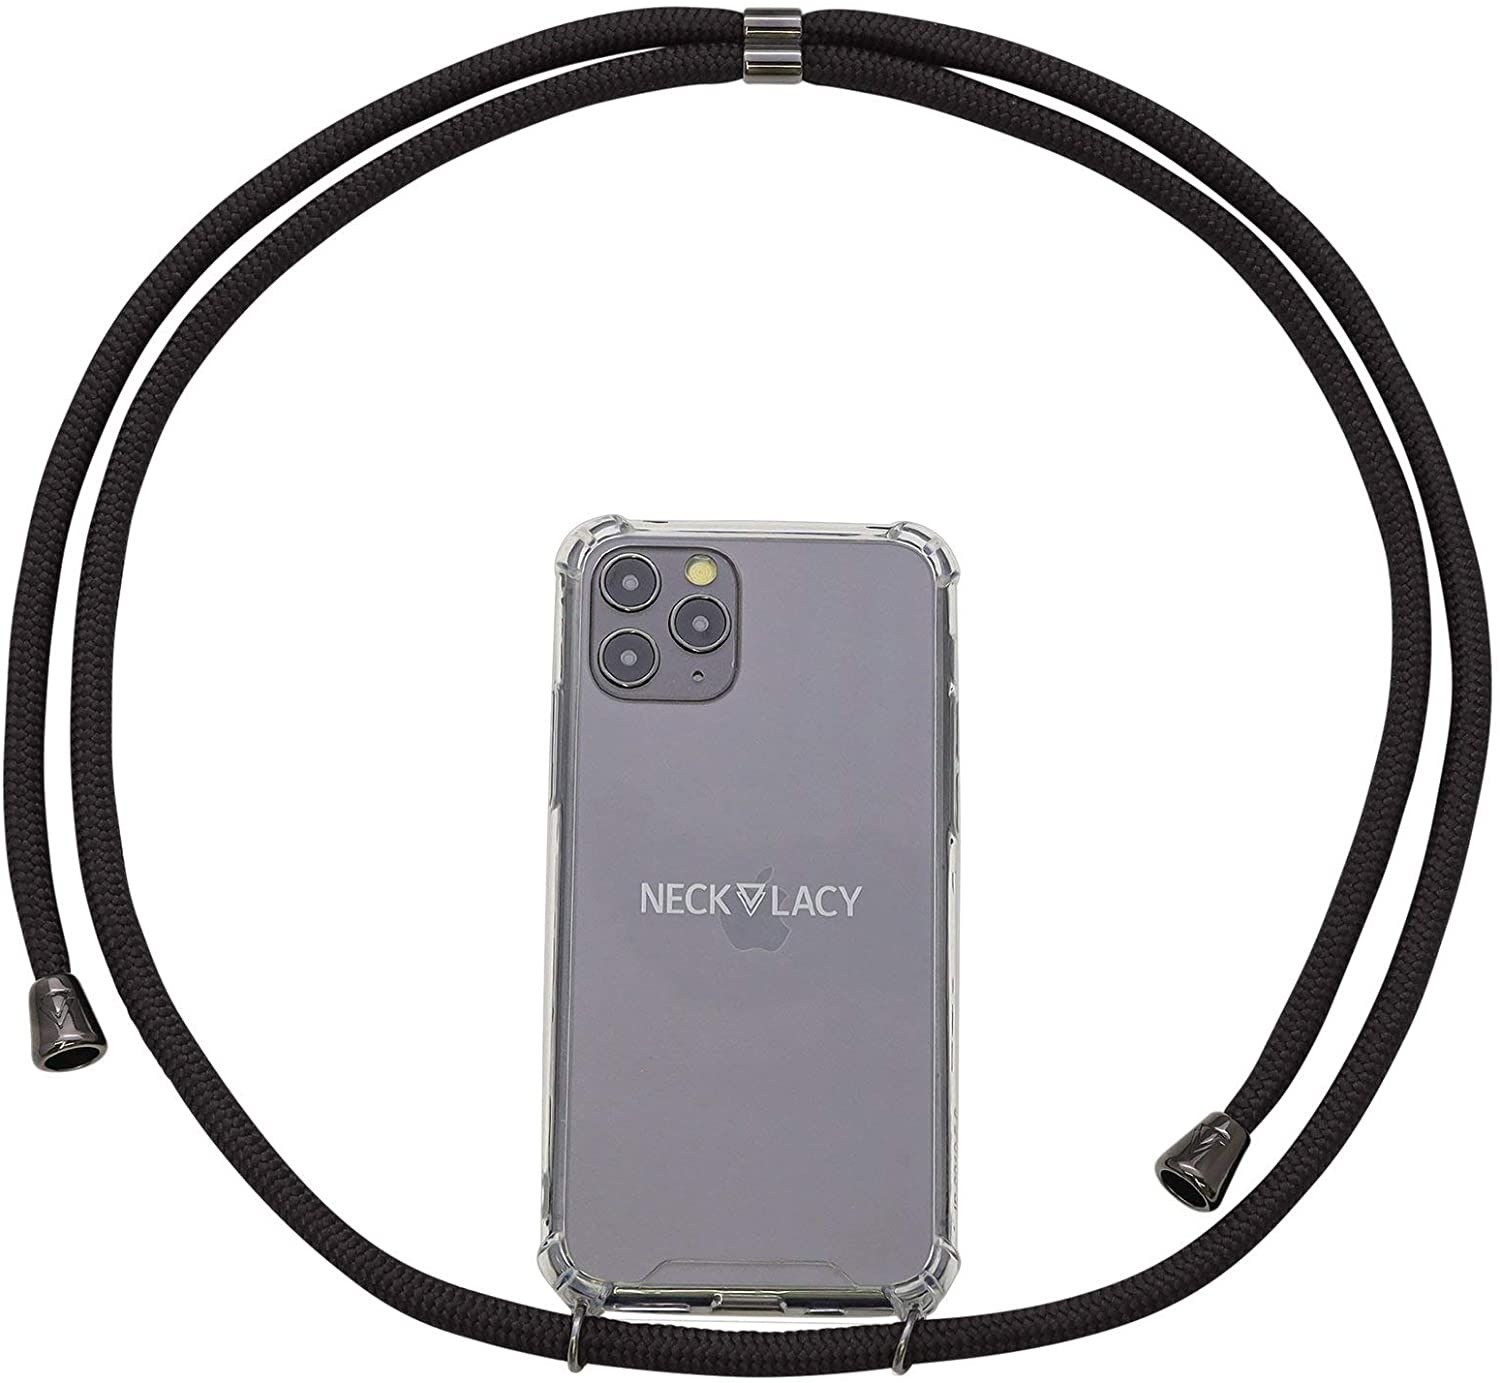 NECKLACY Handykette Handyhülle zum umhängen - für iPhone 7/8 - Case / Handyhülle mit Band zum umhängen - Trageband Hals mit Kordel - Smartphone Necklace, All Black